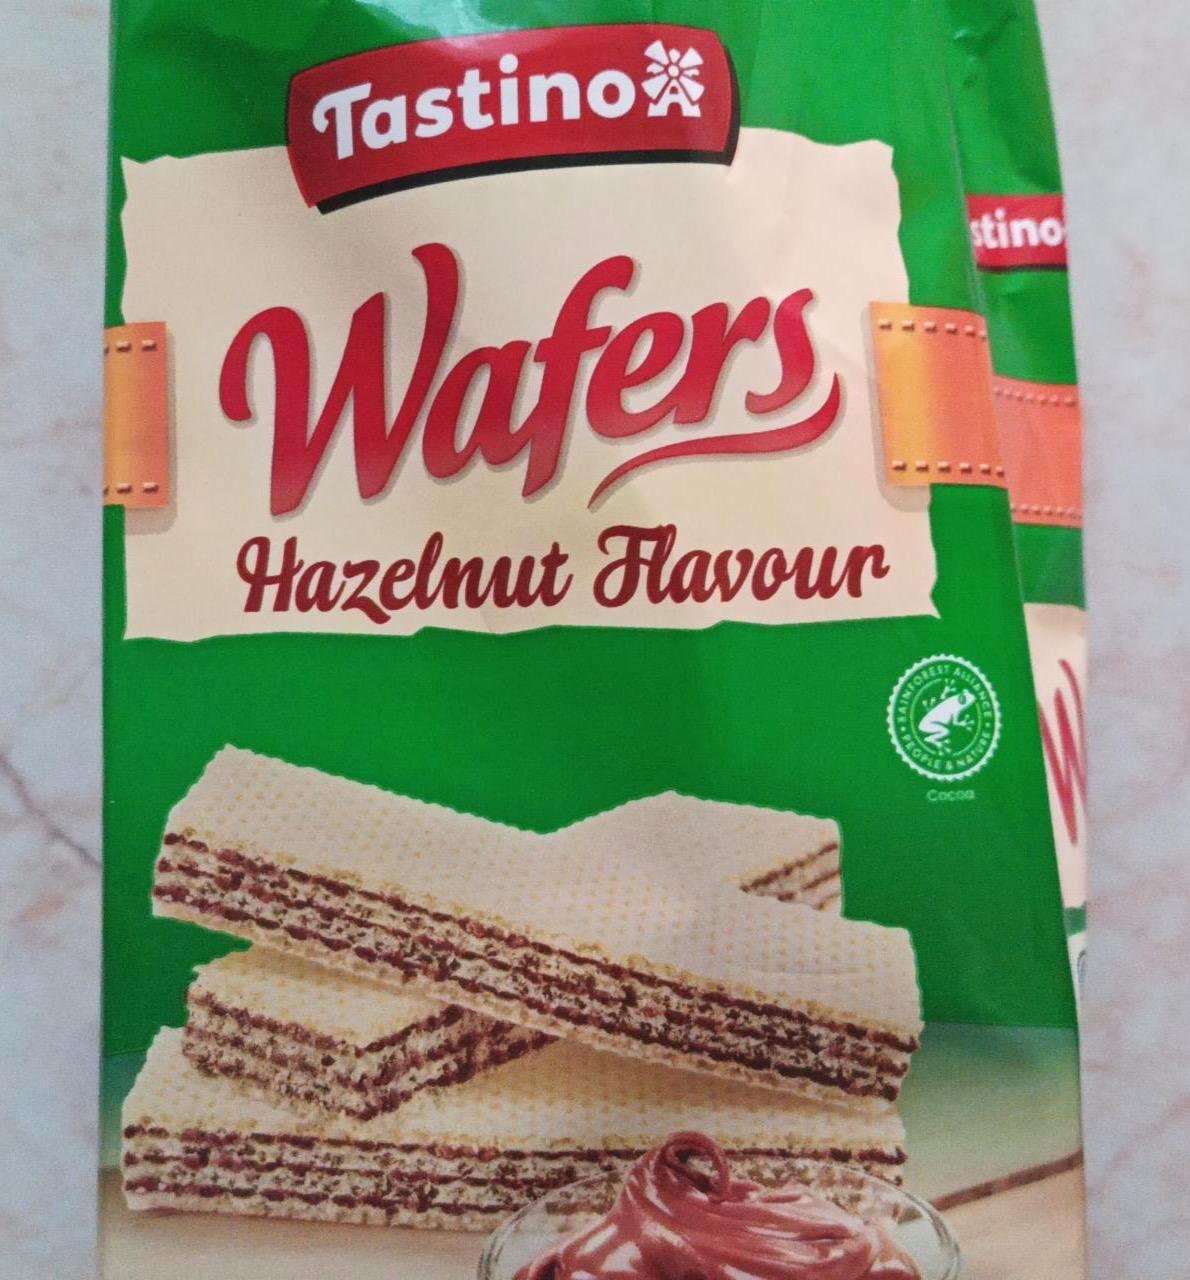 Képek - Wafers hazelnut flavour Tastino